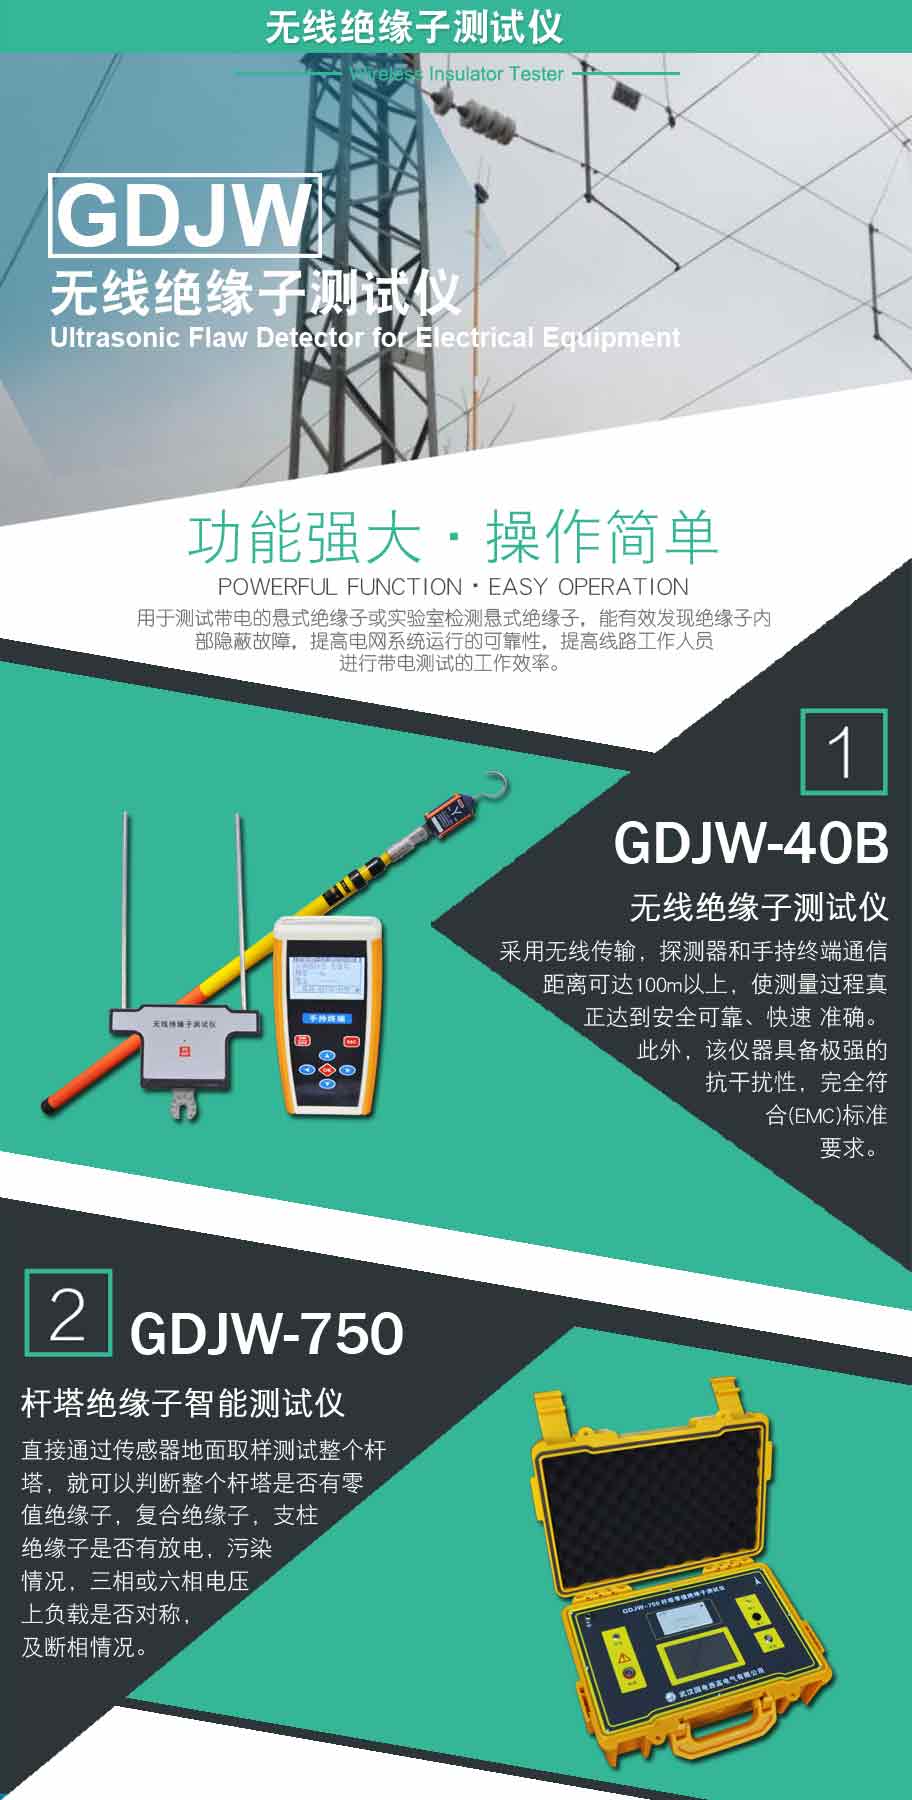 GDJW-40B 无线绝缘子测试仪